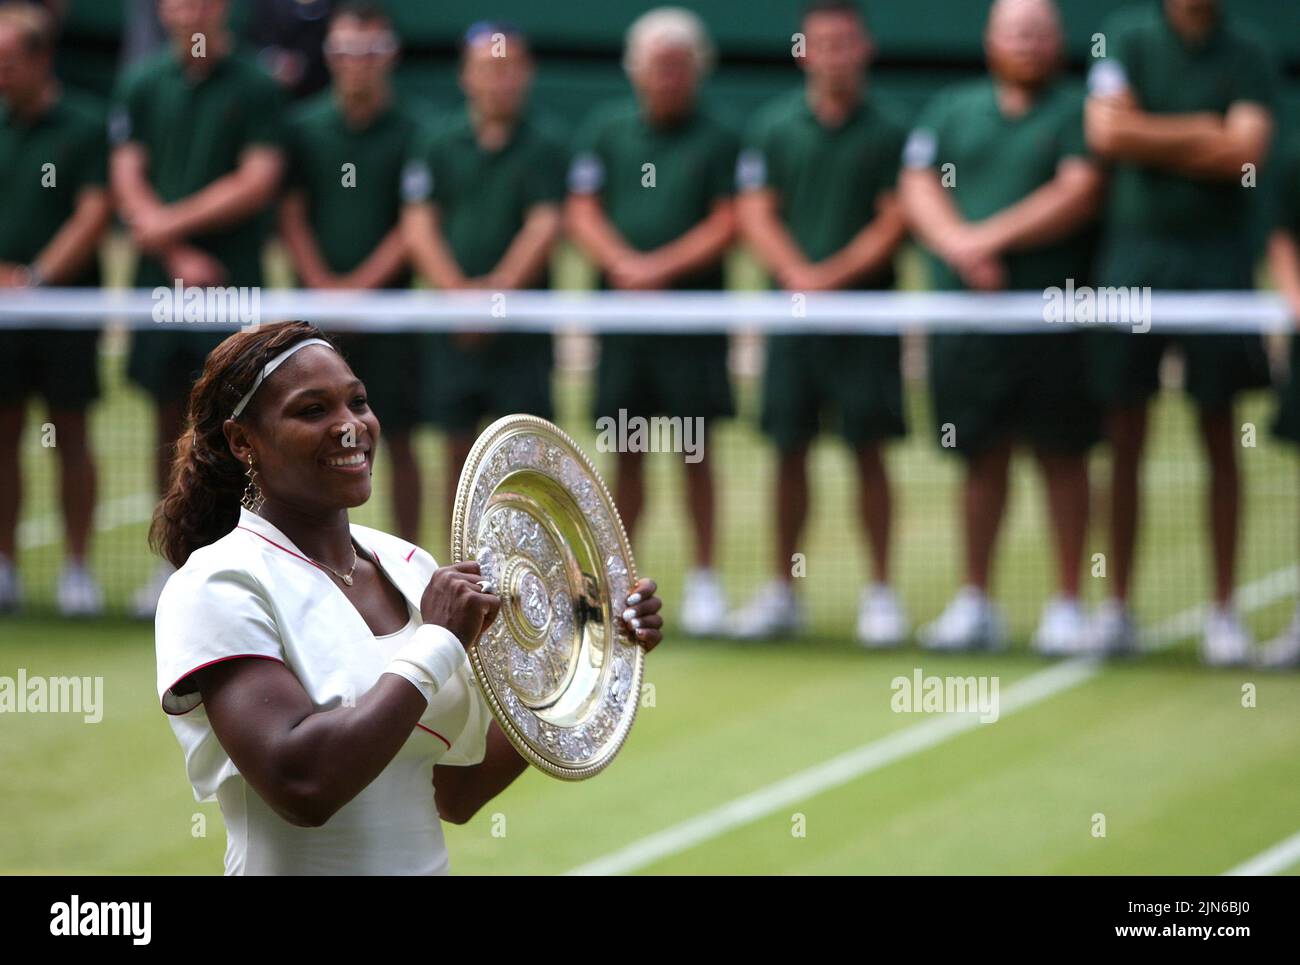 Foto de archivo de fecha 03-07-2010 de Serena Williams, quien ha anunciado su inminente retiro del tenis. Fecha de emisión: Martes 9 de Agosto, 2022. Foto de stock